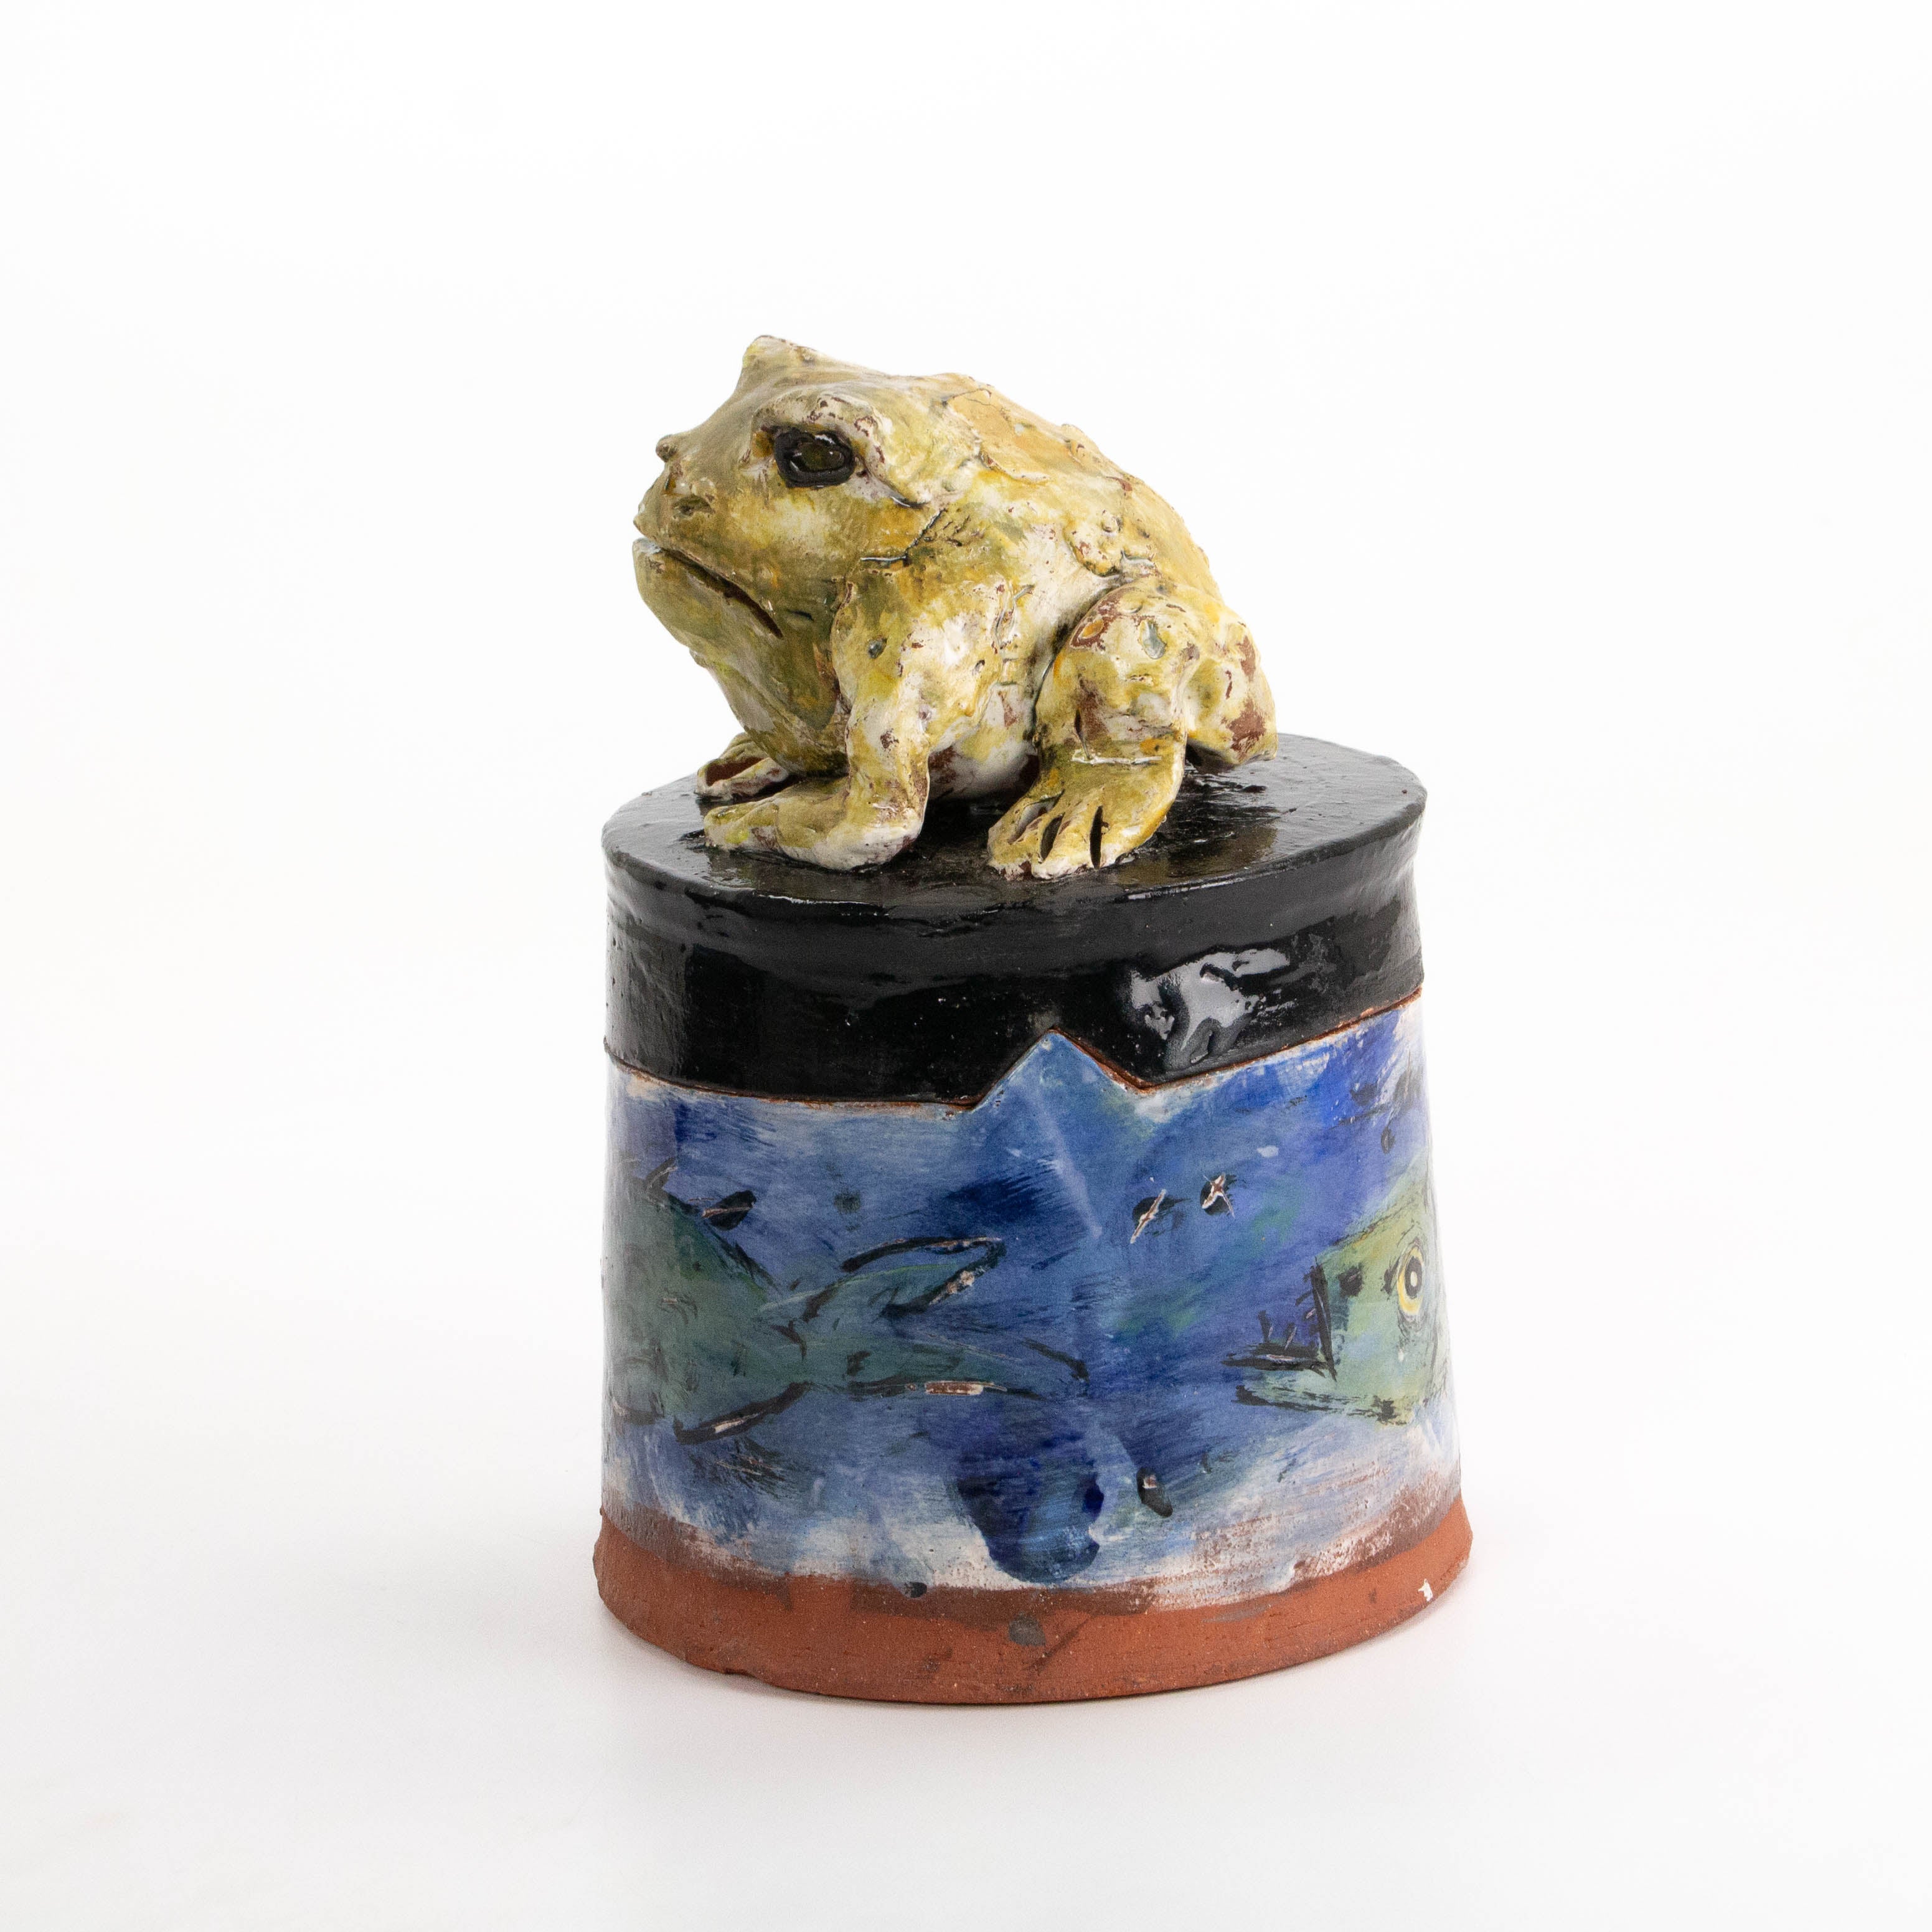 Sculptural Frog Jar